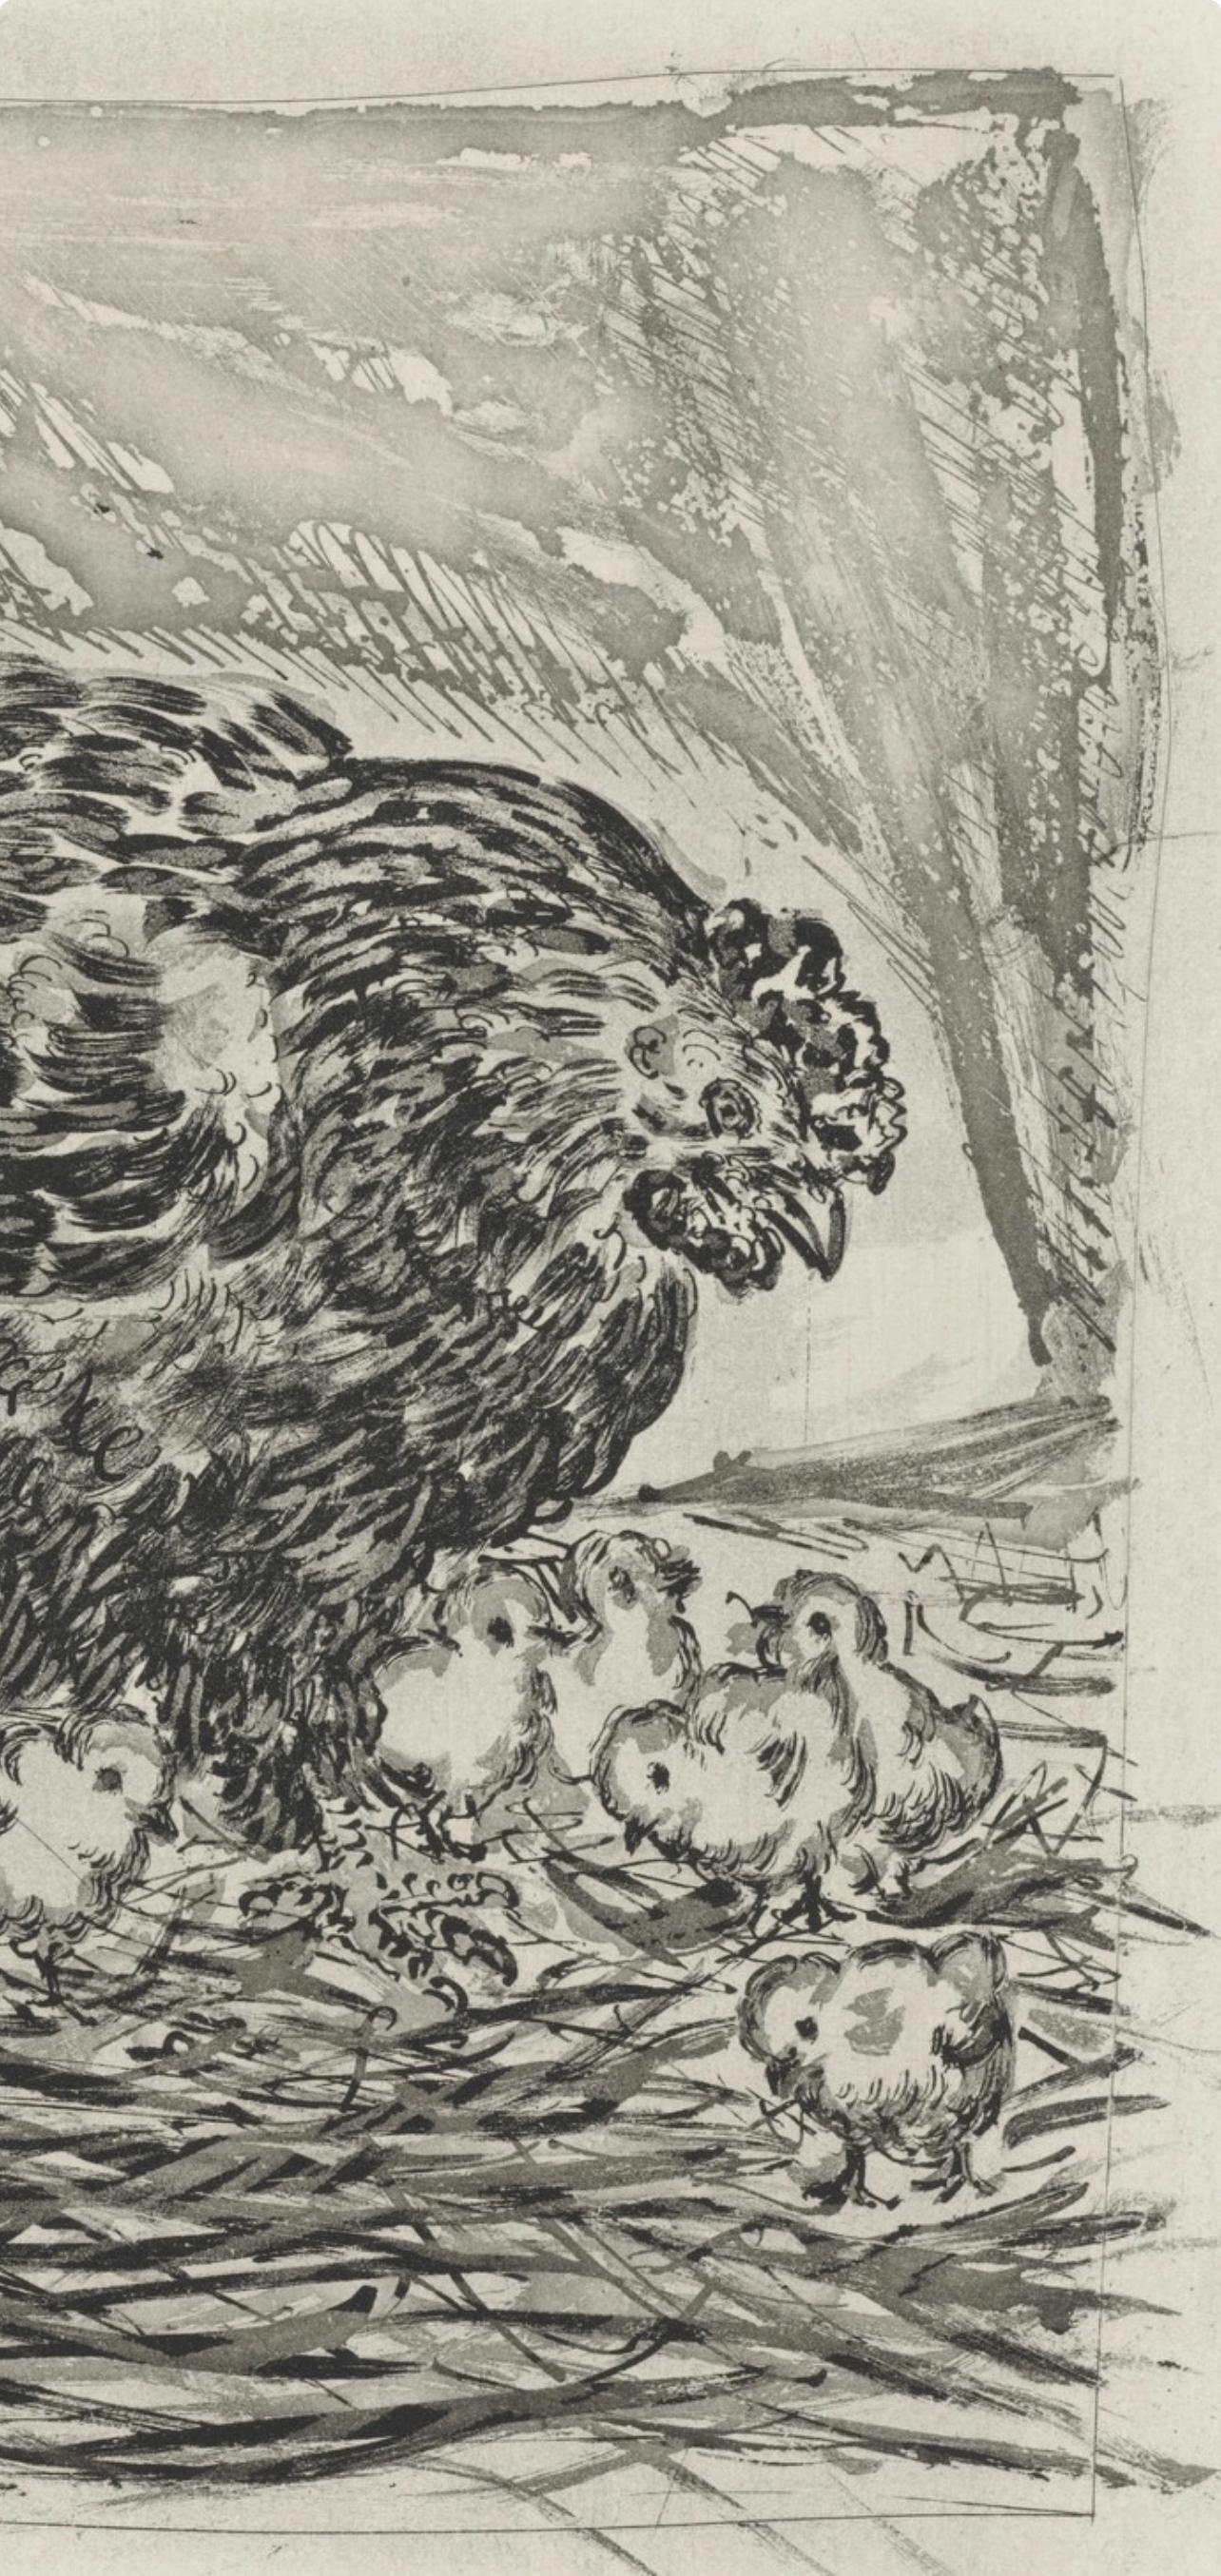 Picasso, La Mère poule, Histoire naturelle (after) - Print by Pablo Picasso